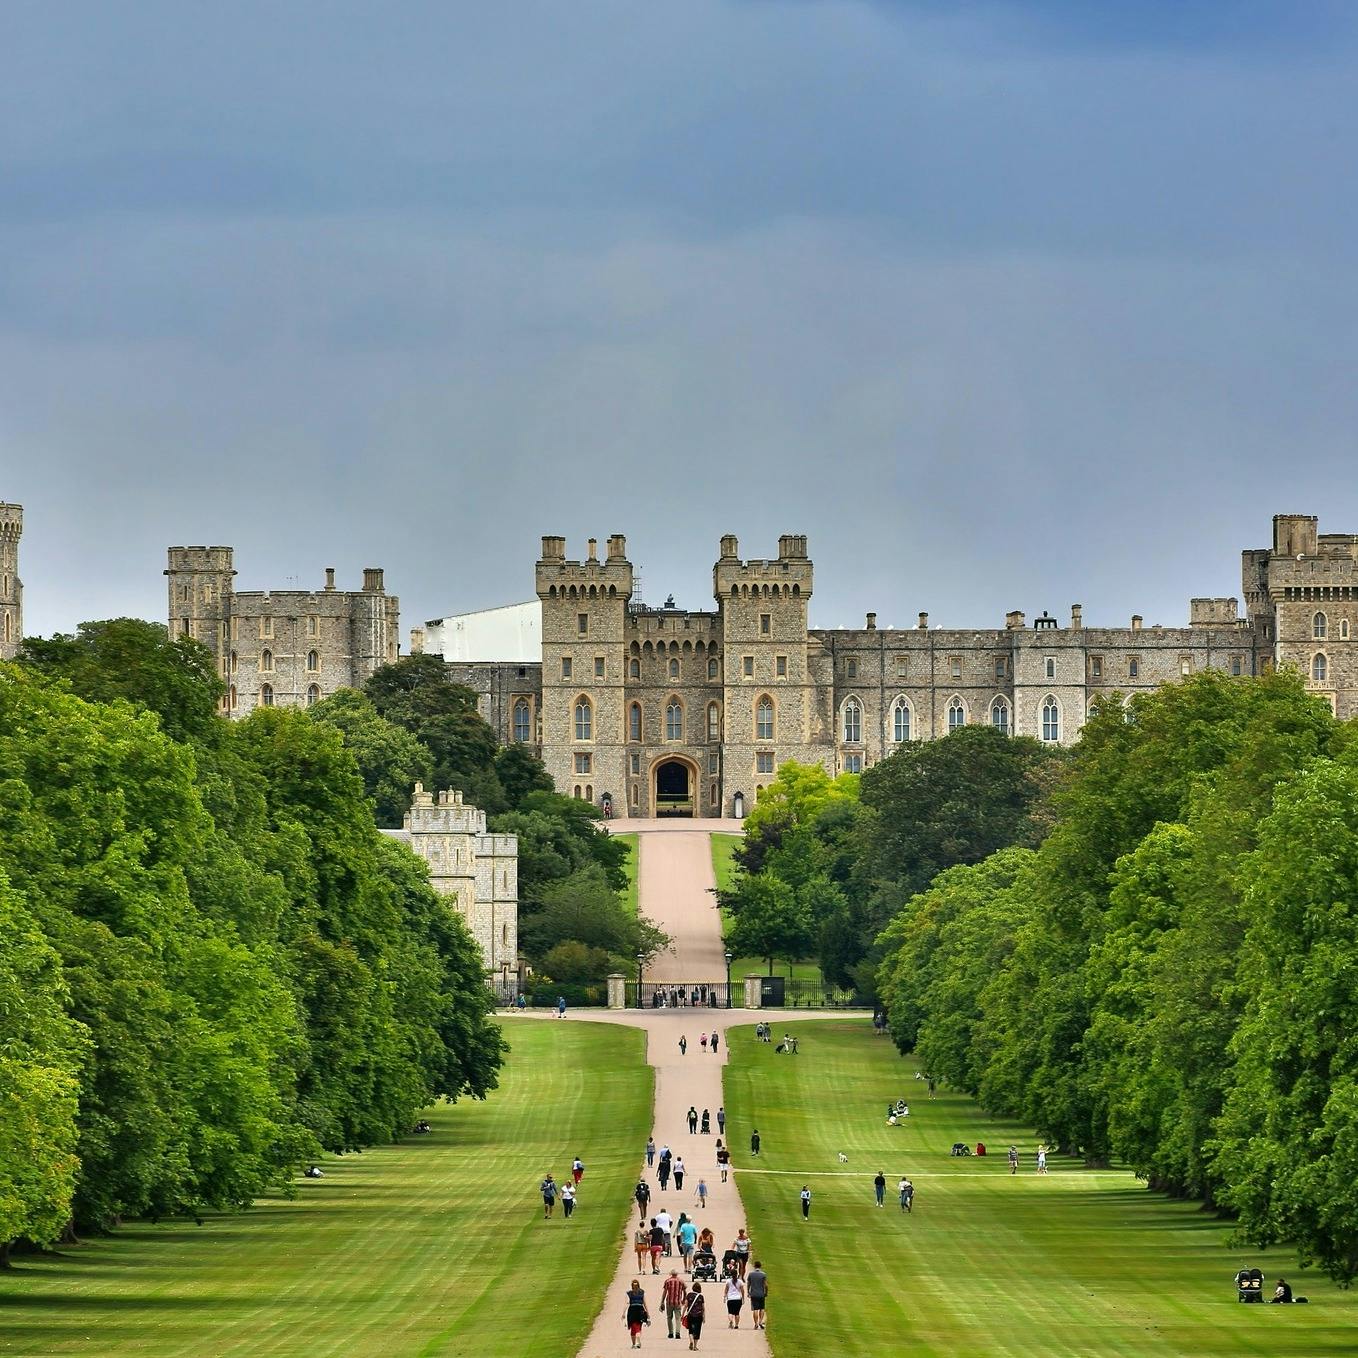 Excursión de medio día al Castillo de Windsor desde Londres con entradas